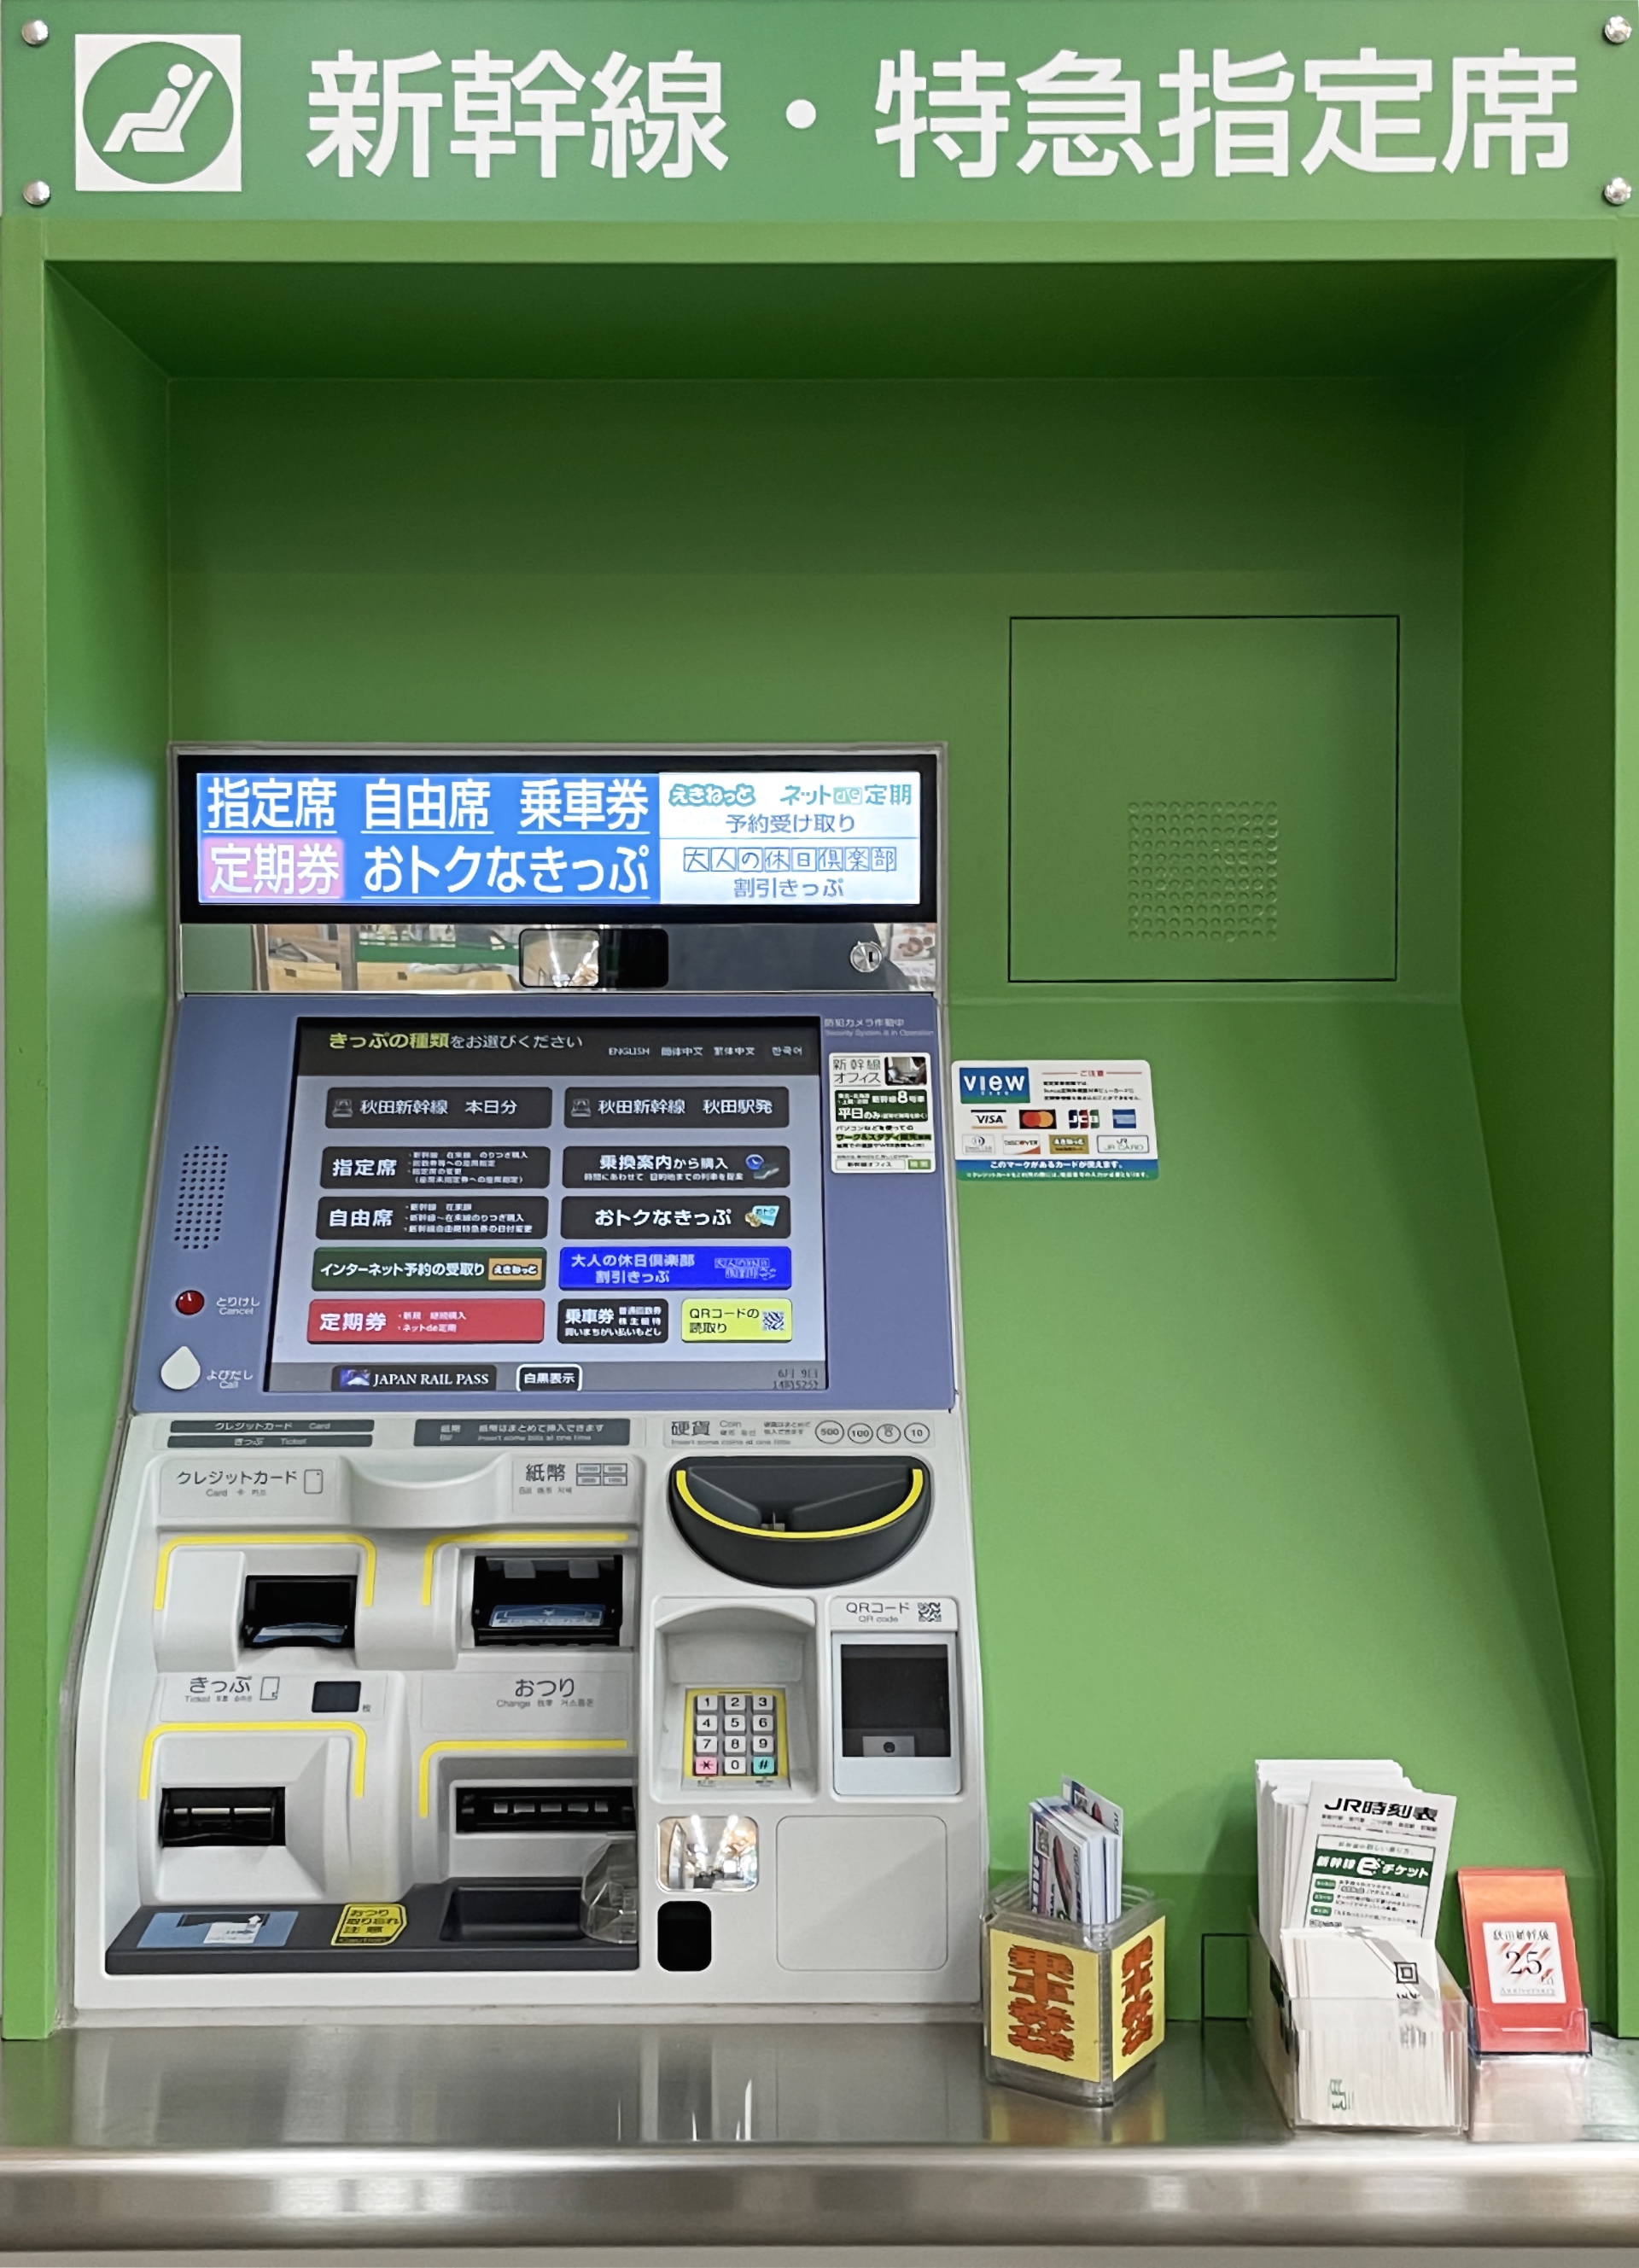 Ein JR-East-Fahrkartenautomat für Shinkansen und Limited-Express-Züge.